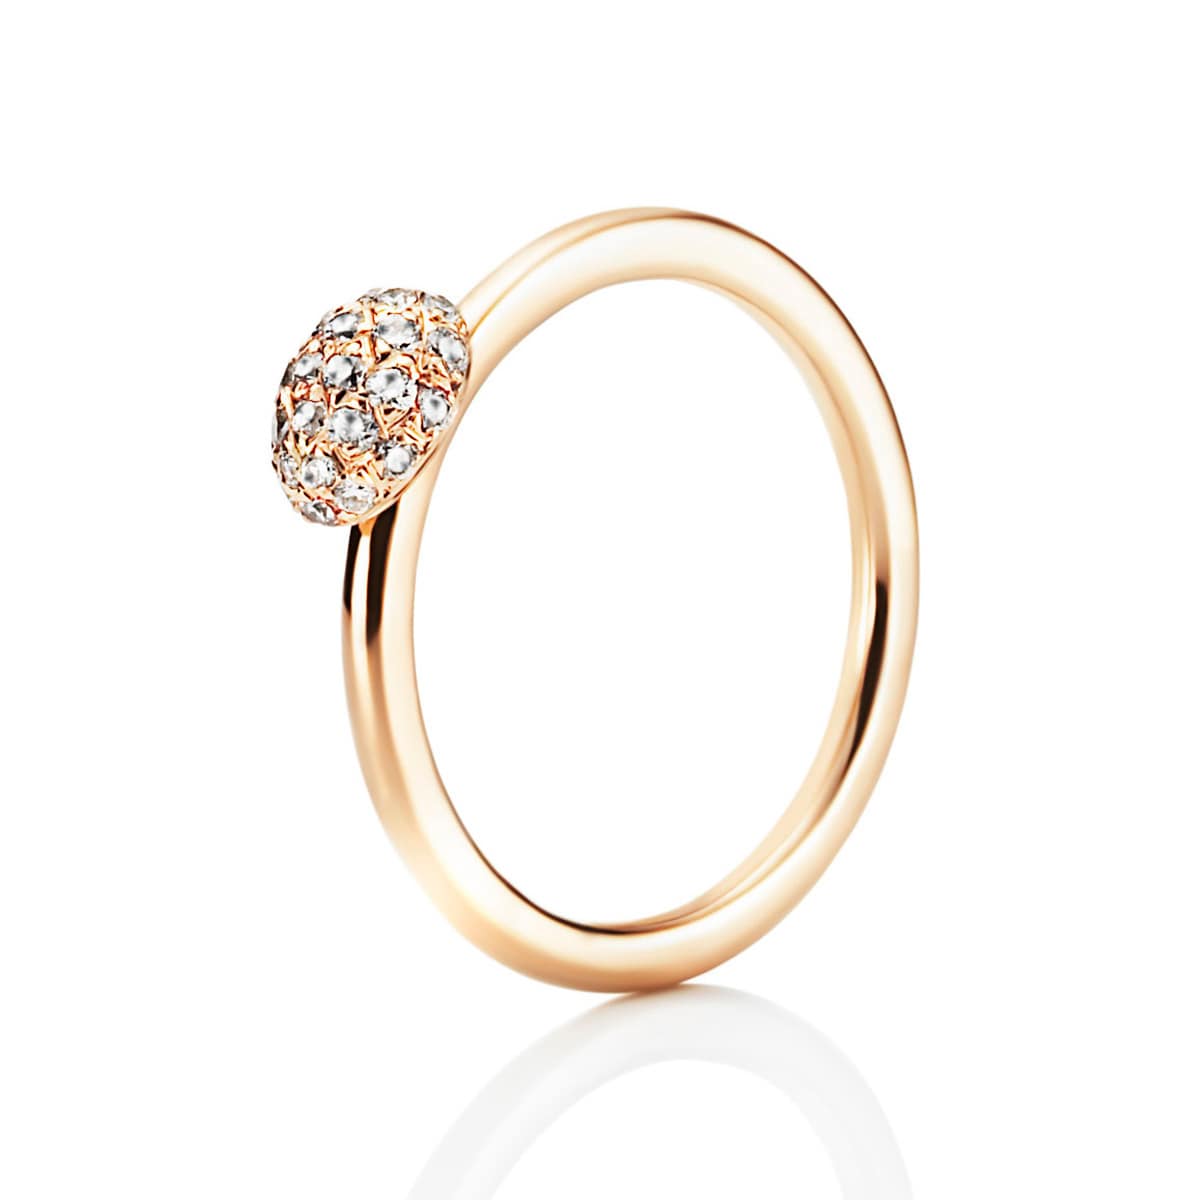 Efva_Attling_smycken_Love Bead Ring - Diamonds 13-101-00440(1)_hos_Jarl_Sandin